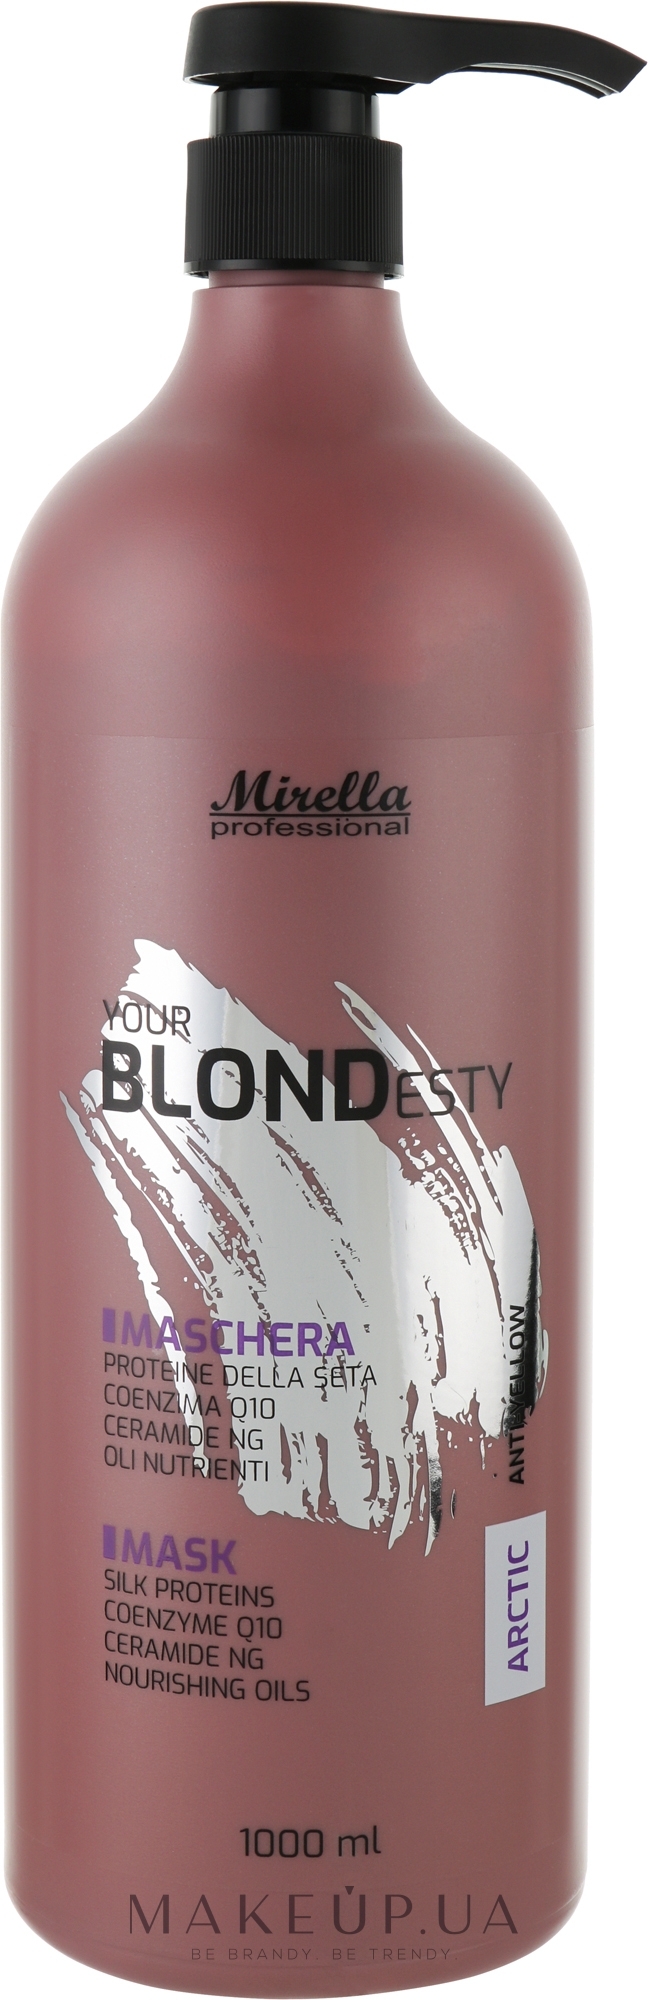 Маска для арктических оттенков блонд - Mirella Arctic Your Blondesty Hair Mask — фото 1000ml